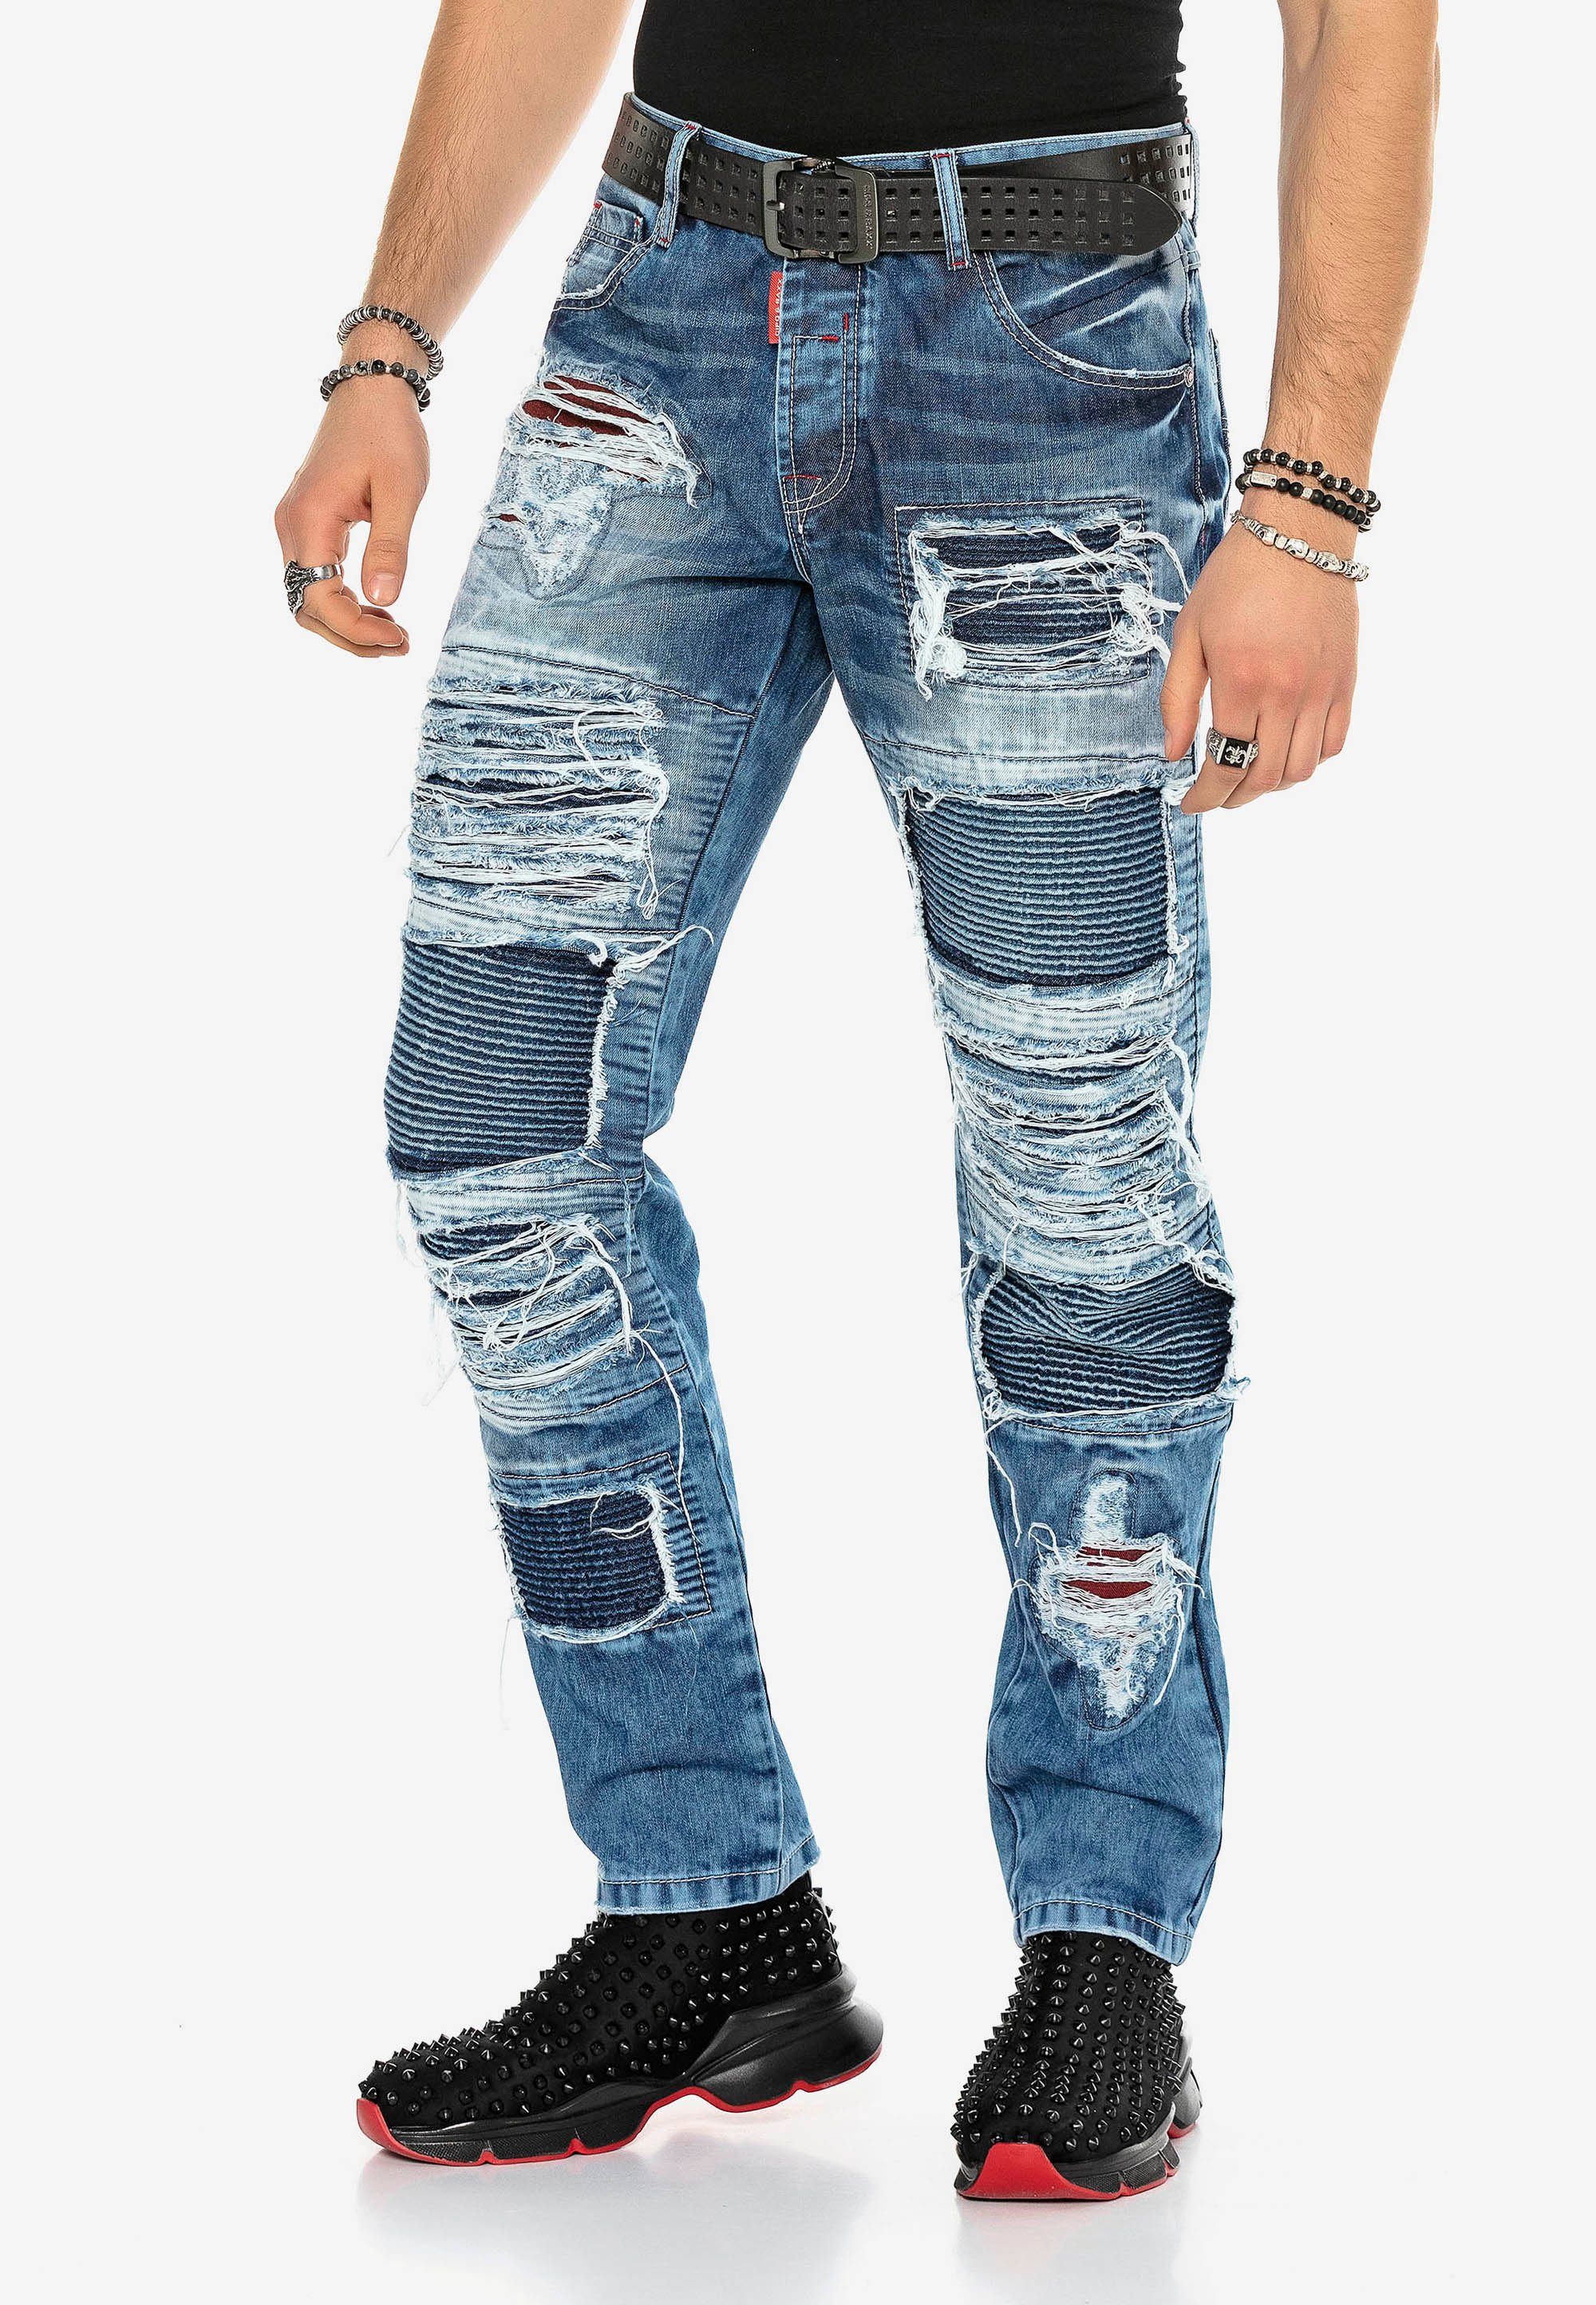 Riss-Design im Baxx Jeans & Cipo auffälligen Bequeme